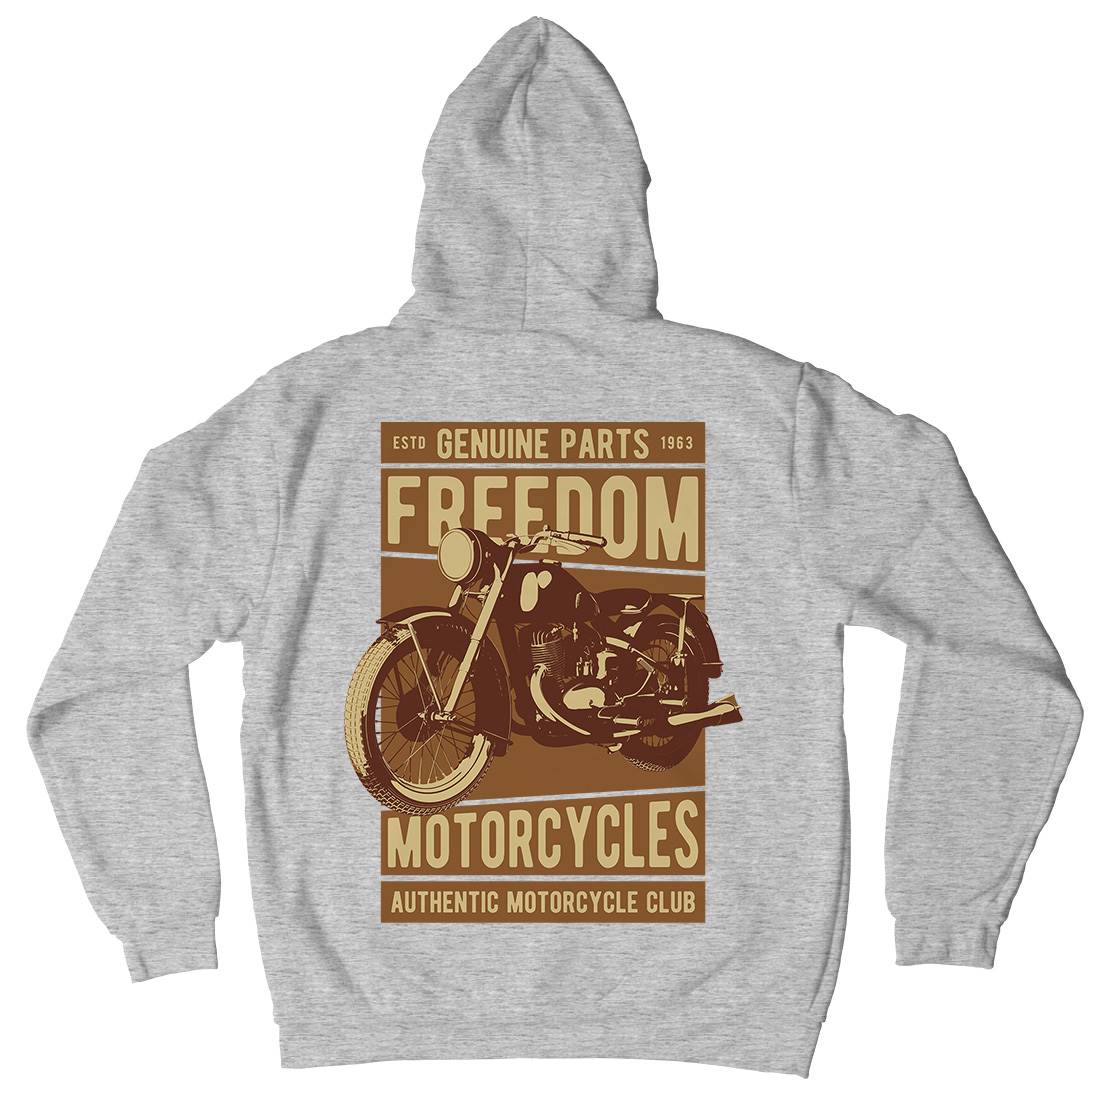 Freedom Kids Crew Neck Hoodie Motorcycles B317